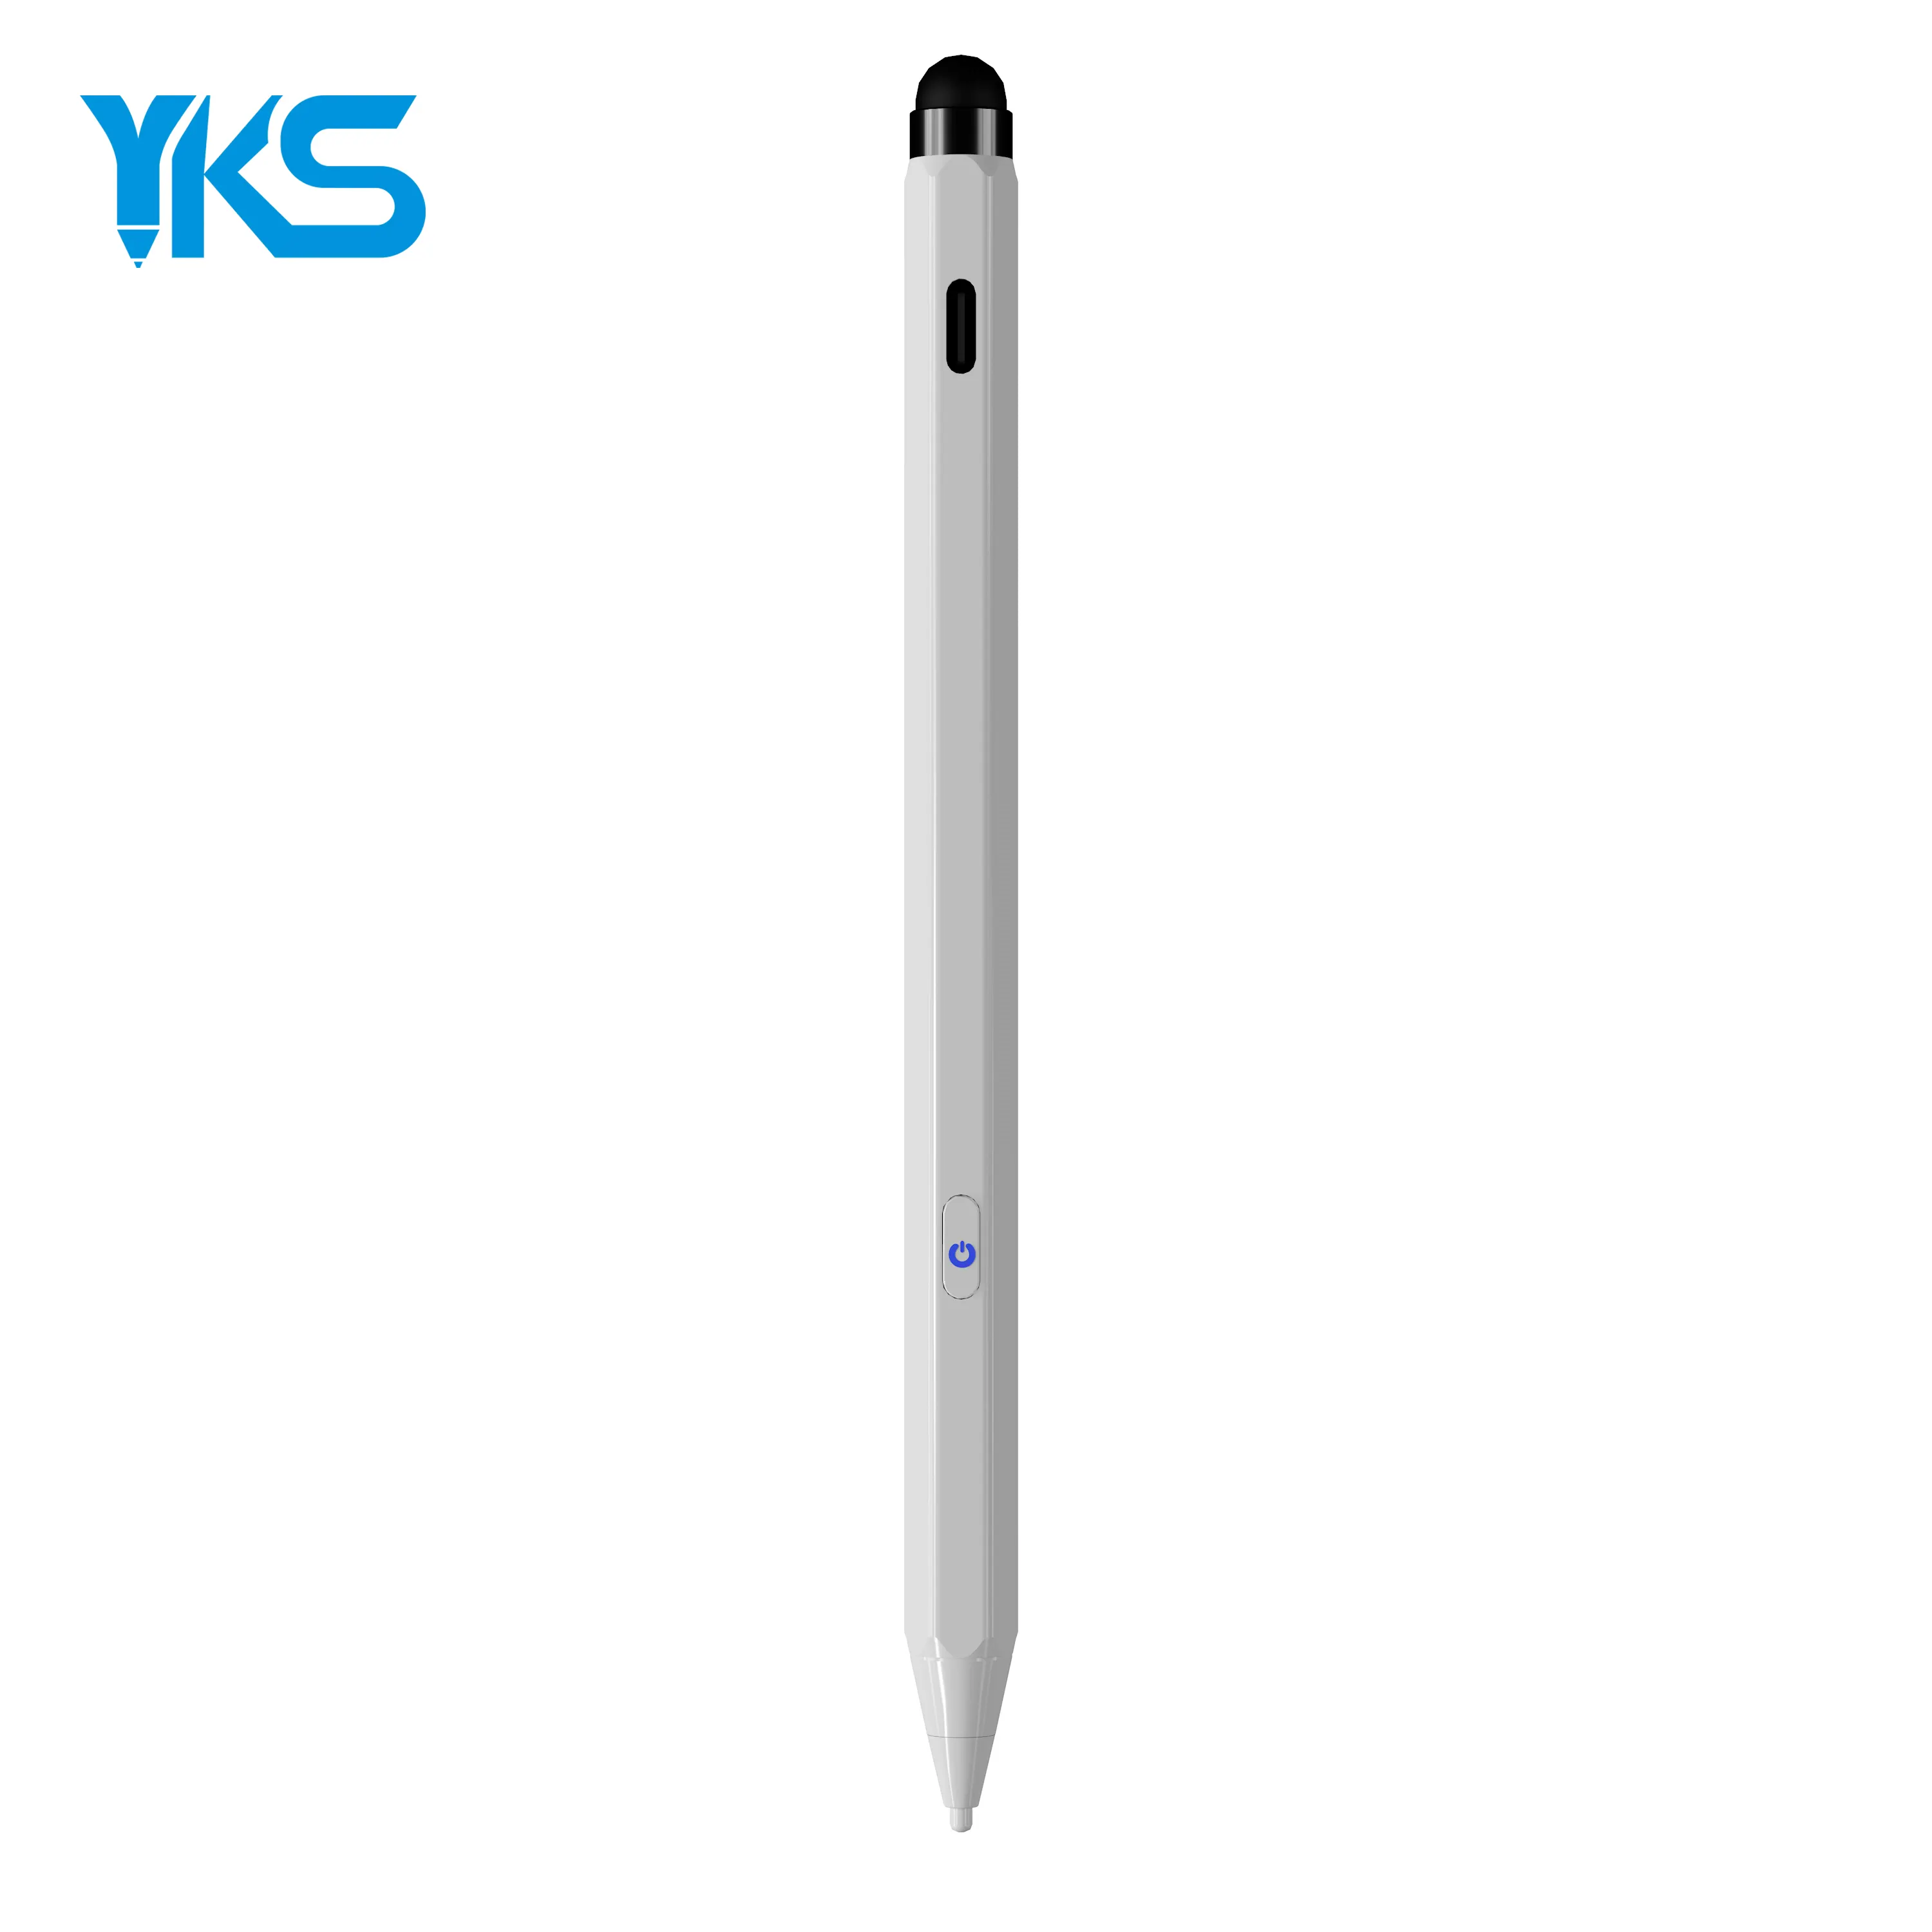 2 In 1 Stylus Pen Tablet Notebook Aktive kapazitive Zeichnung Schreiben Telefon Bleistift mit Stift für Macbook Pro Android